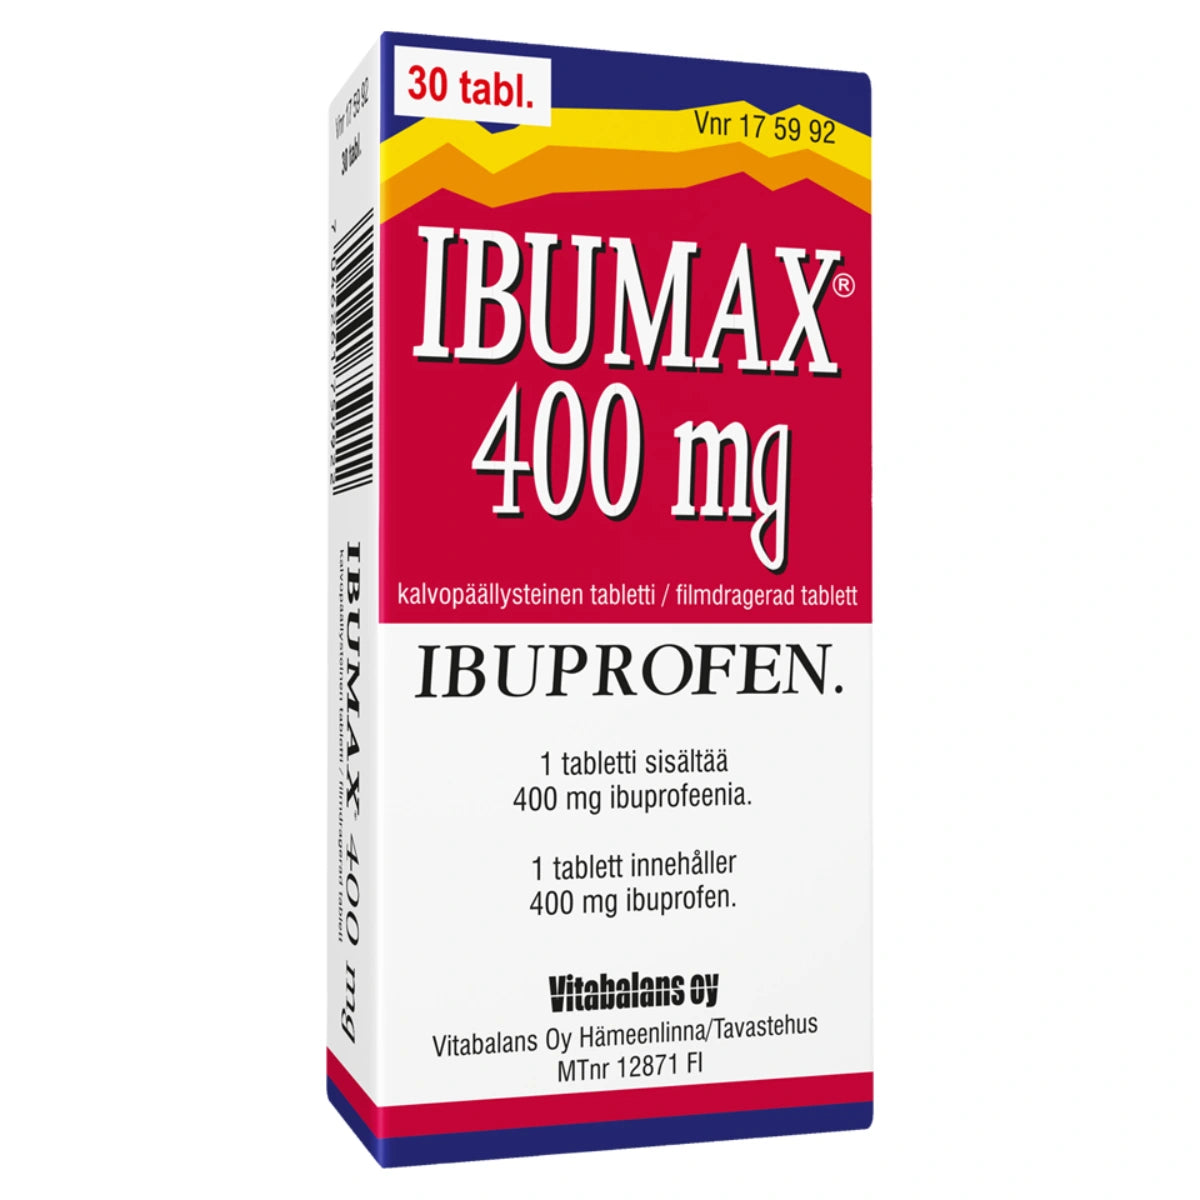 IBUMAX 400 mg tabletti, kalvopäällysteinen 30 kpl